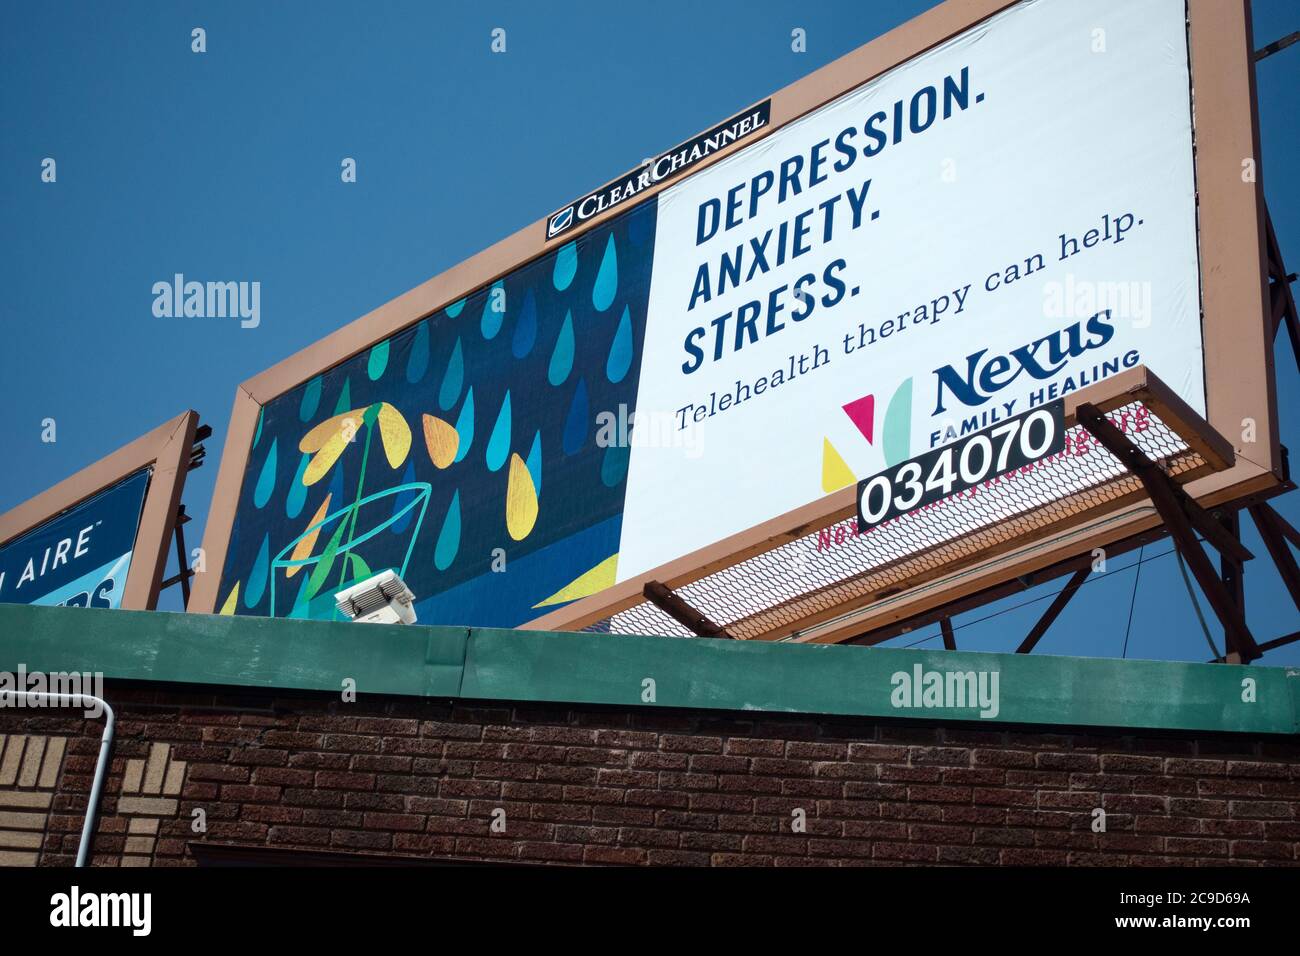 Reklametafel, die telemedizinische Therapie für Depression, Angst und Stress befürwortet. St. Paul Minnesota, USA Stockfoto